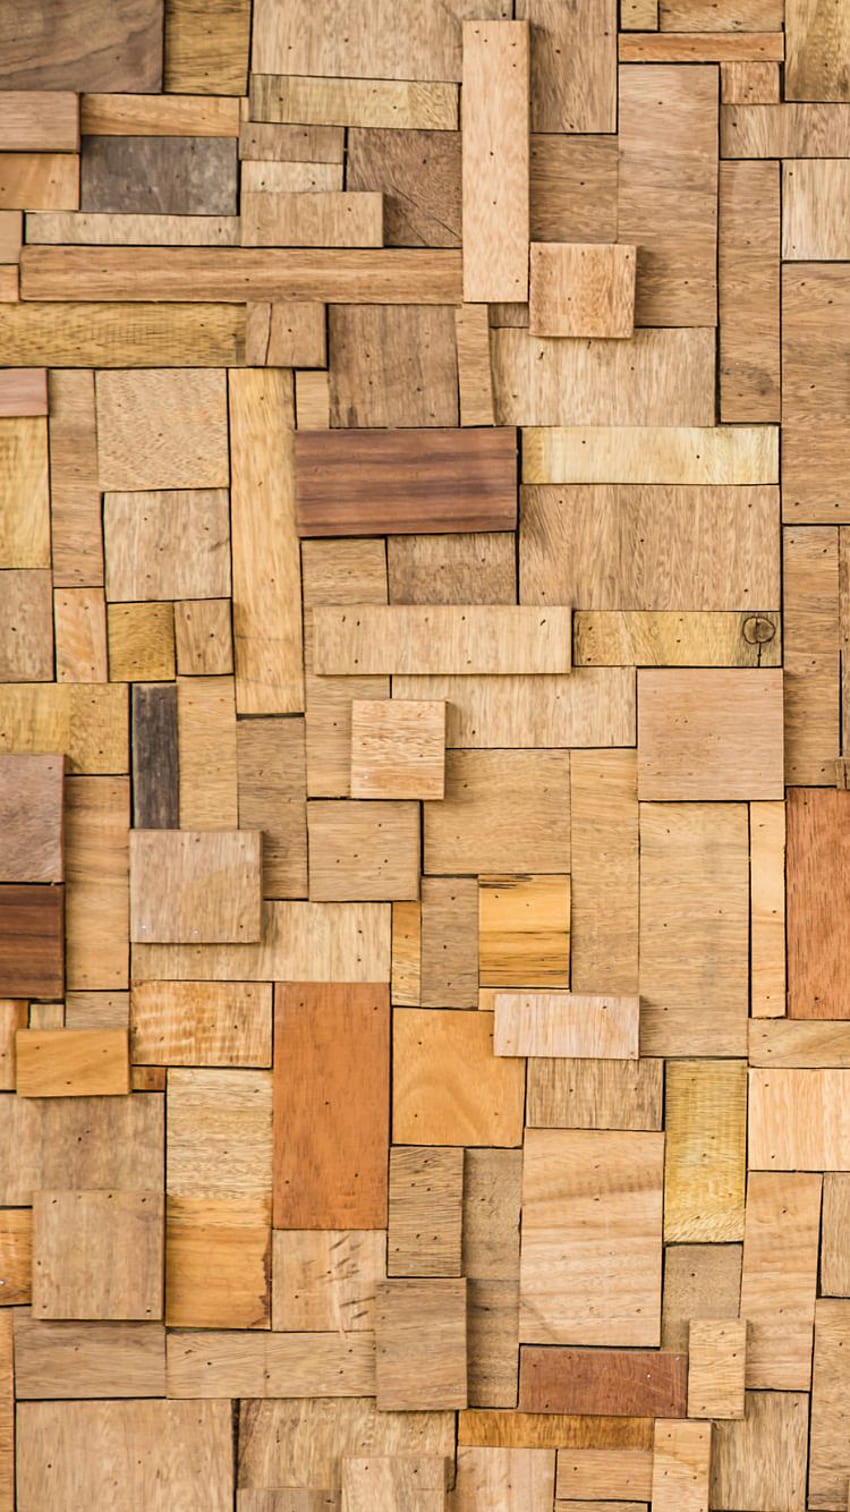 Từ vũ khí đến đồ nội thất, gỗ luôn là vật liệu được ưa chuộng cho độ bền và tính thẩm mỹ. Xem hình ảnh về gỗ để cảm nhận vẻ đẹp tự nhiên và sự sang trọng của nó.